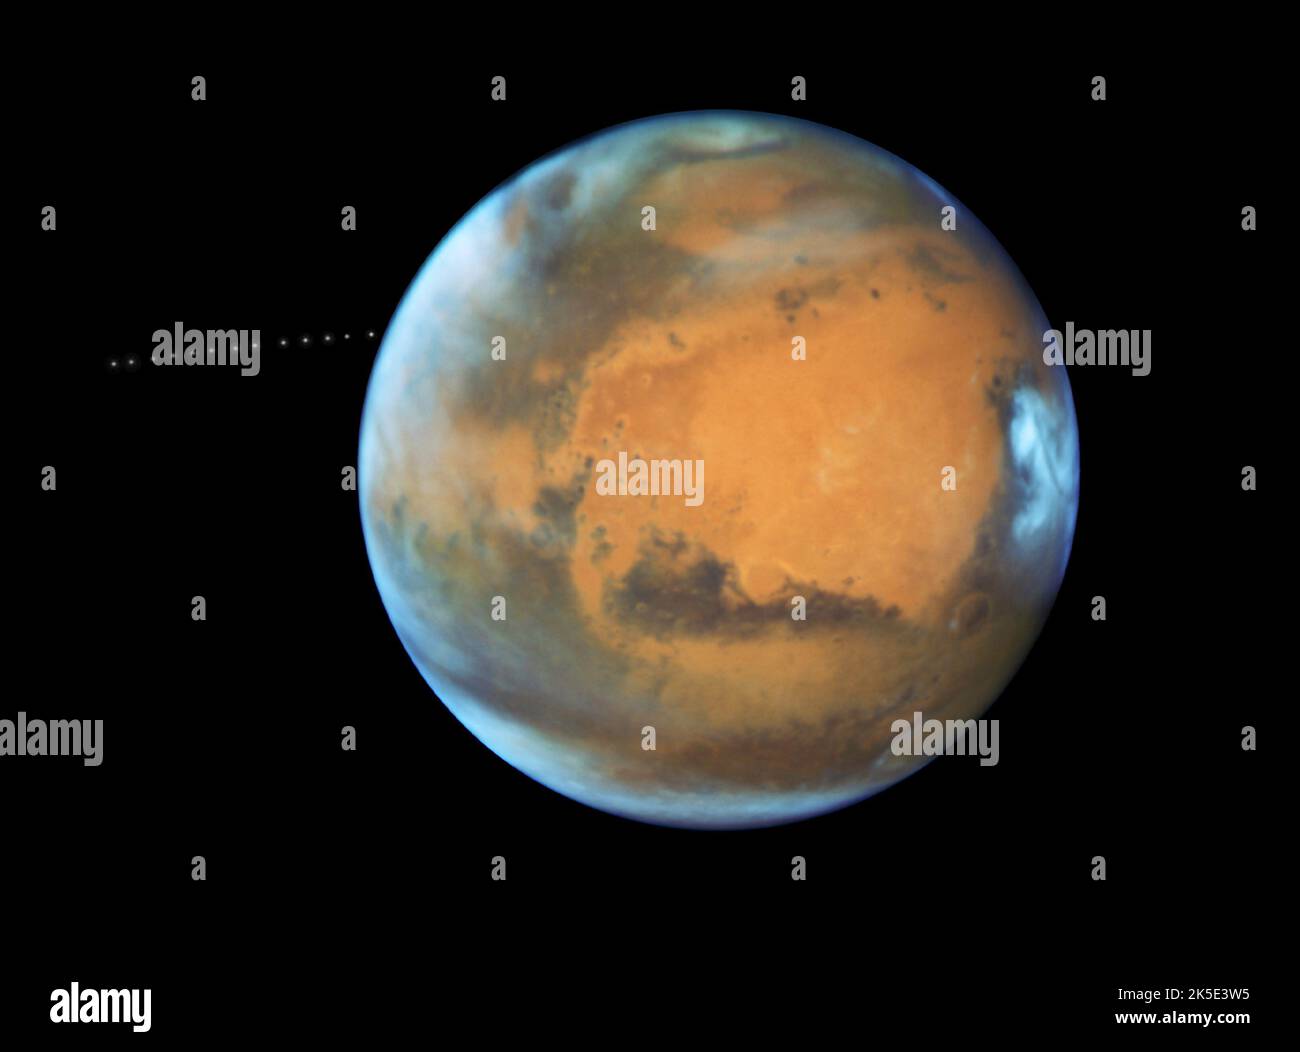 Marte. Il telescopio spaziale Hubble della NASA cattura anche la piccola luna Phobos durante il suo trekking intorno al pianeta Rosso. Scoperta nel 1877, la luna è così piccola che appare come una stella nelle immagini Hubble. Phobos orbita Marte in soli 7hrs e 39 minuti, che è più veloce di Marte ruota. L'orbita della luna si restringe molto lentamente, il che significa che alla fine si infranirà sotto la spinta gravitazionale di Marte, o si schianterà sul pianeta. Hubble ha impiegato 13 esposizioni in 22 minuti per creare un video temporizzato che mostra il percorso orbitale della luna.versione ottimizzata di un'immagine originale della NASA. Credito: NASA Foto Stock